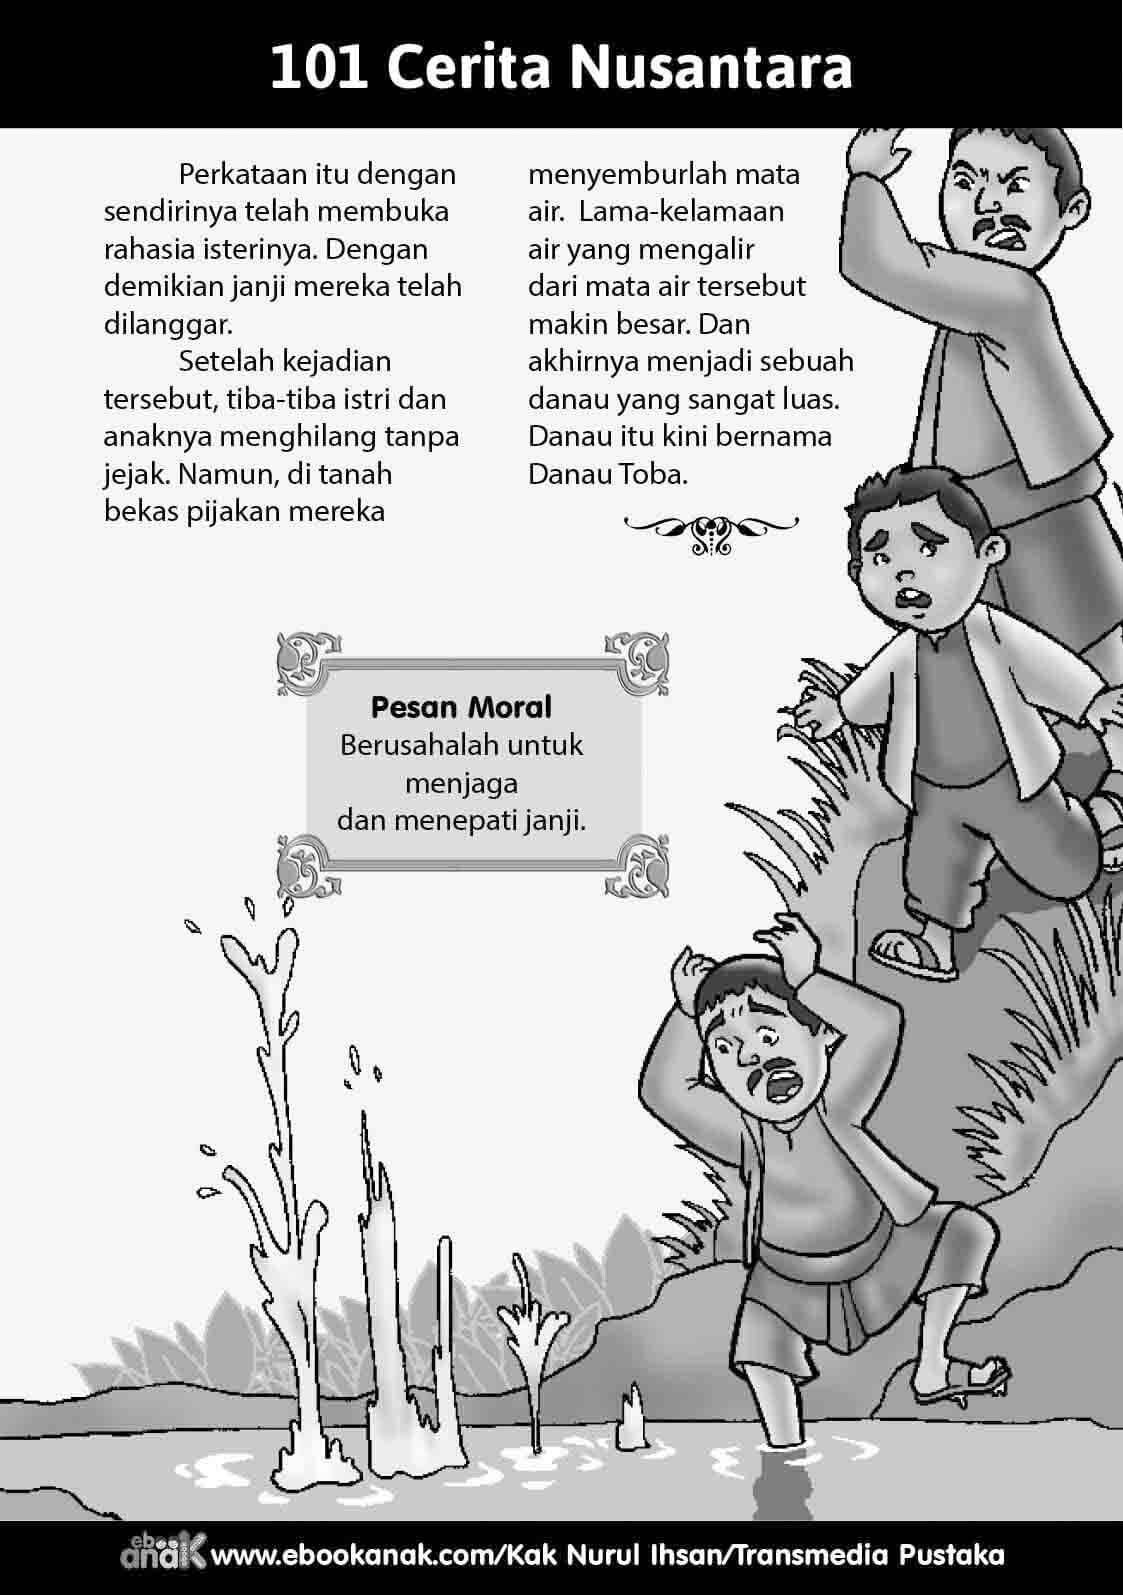 Putri Ikan, asal-usul Danau Toba, cerita rakyat dari Sumatera Utara. (ebookanak.com/Rachman)